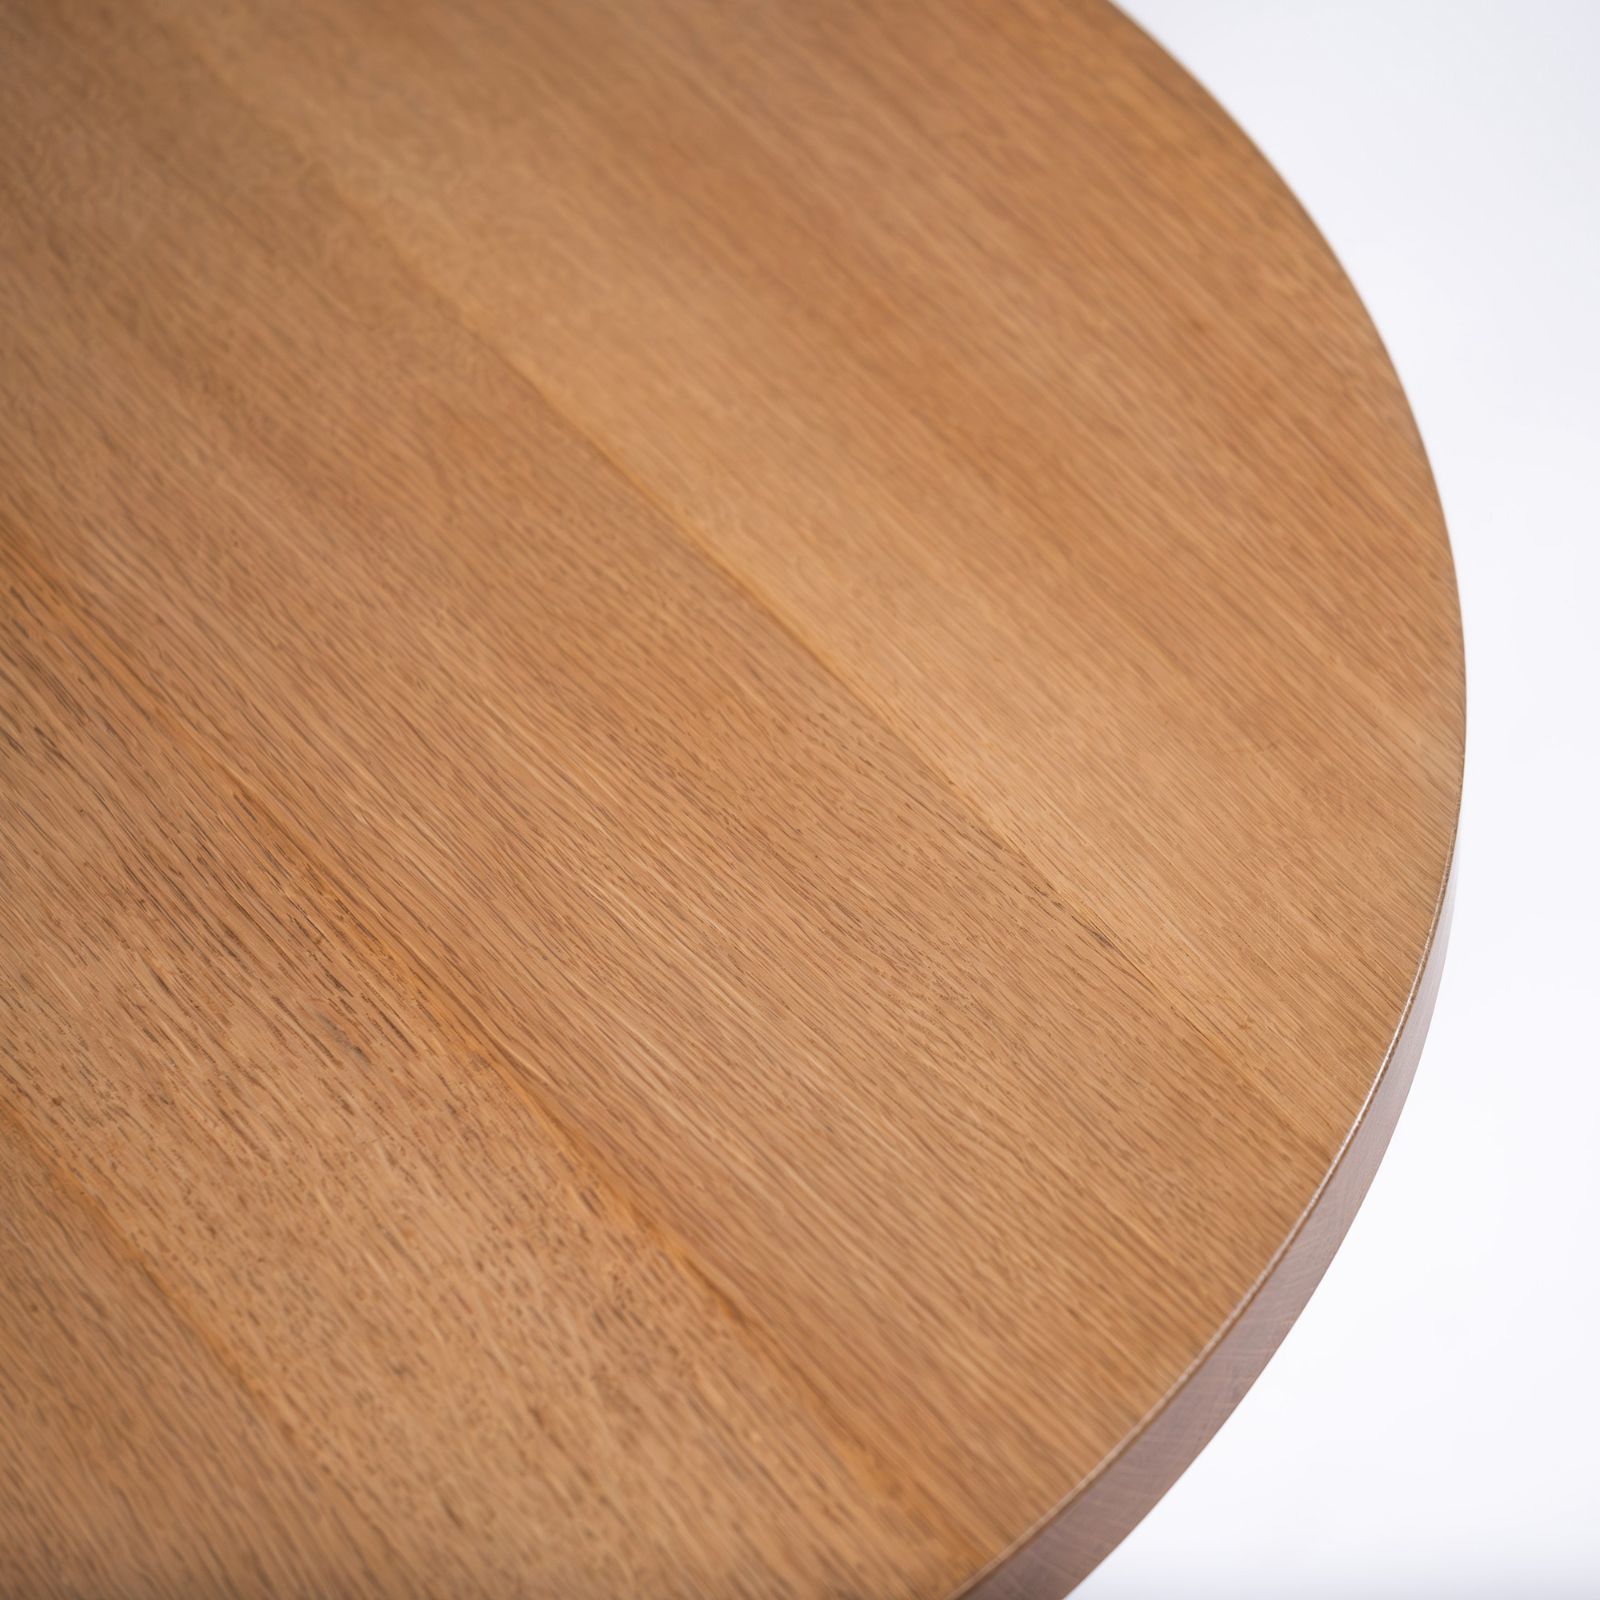 カフェテーブル 飛騨産業 キツツキ 侭 JIN ダイニングテーブル80 ホワイトオーク材 無垢材 ナチュラルモダン 和モダン 円形テーブル ラウンドテーブル